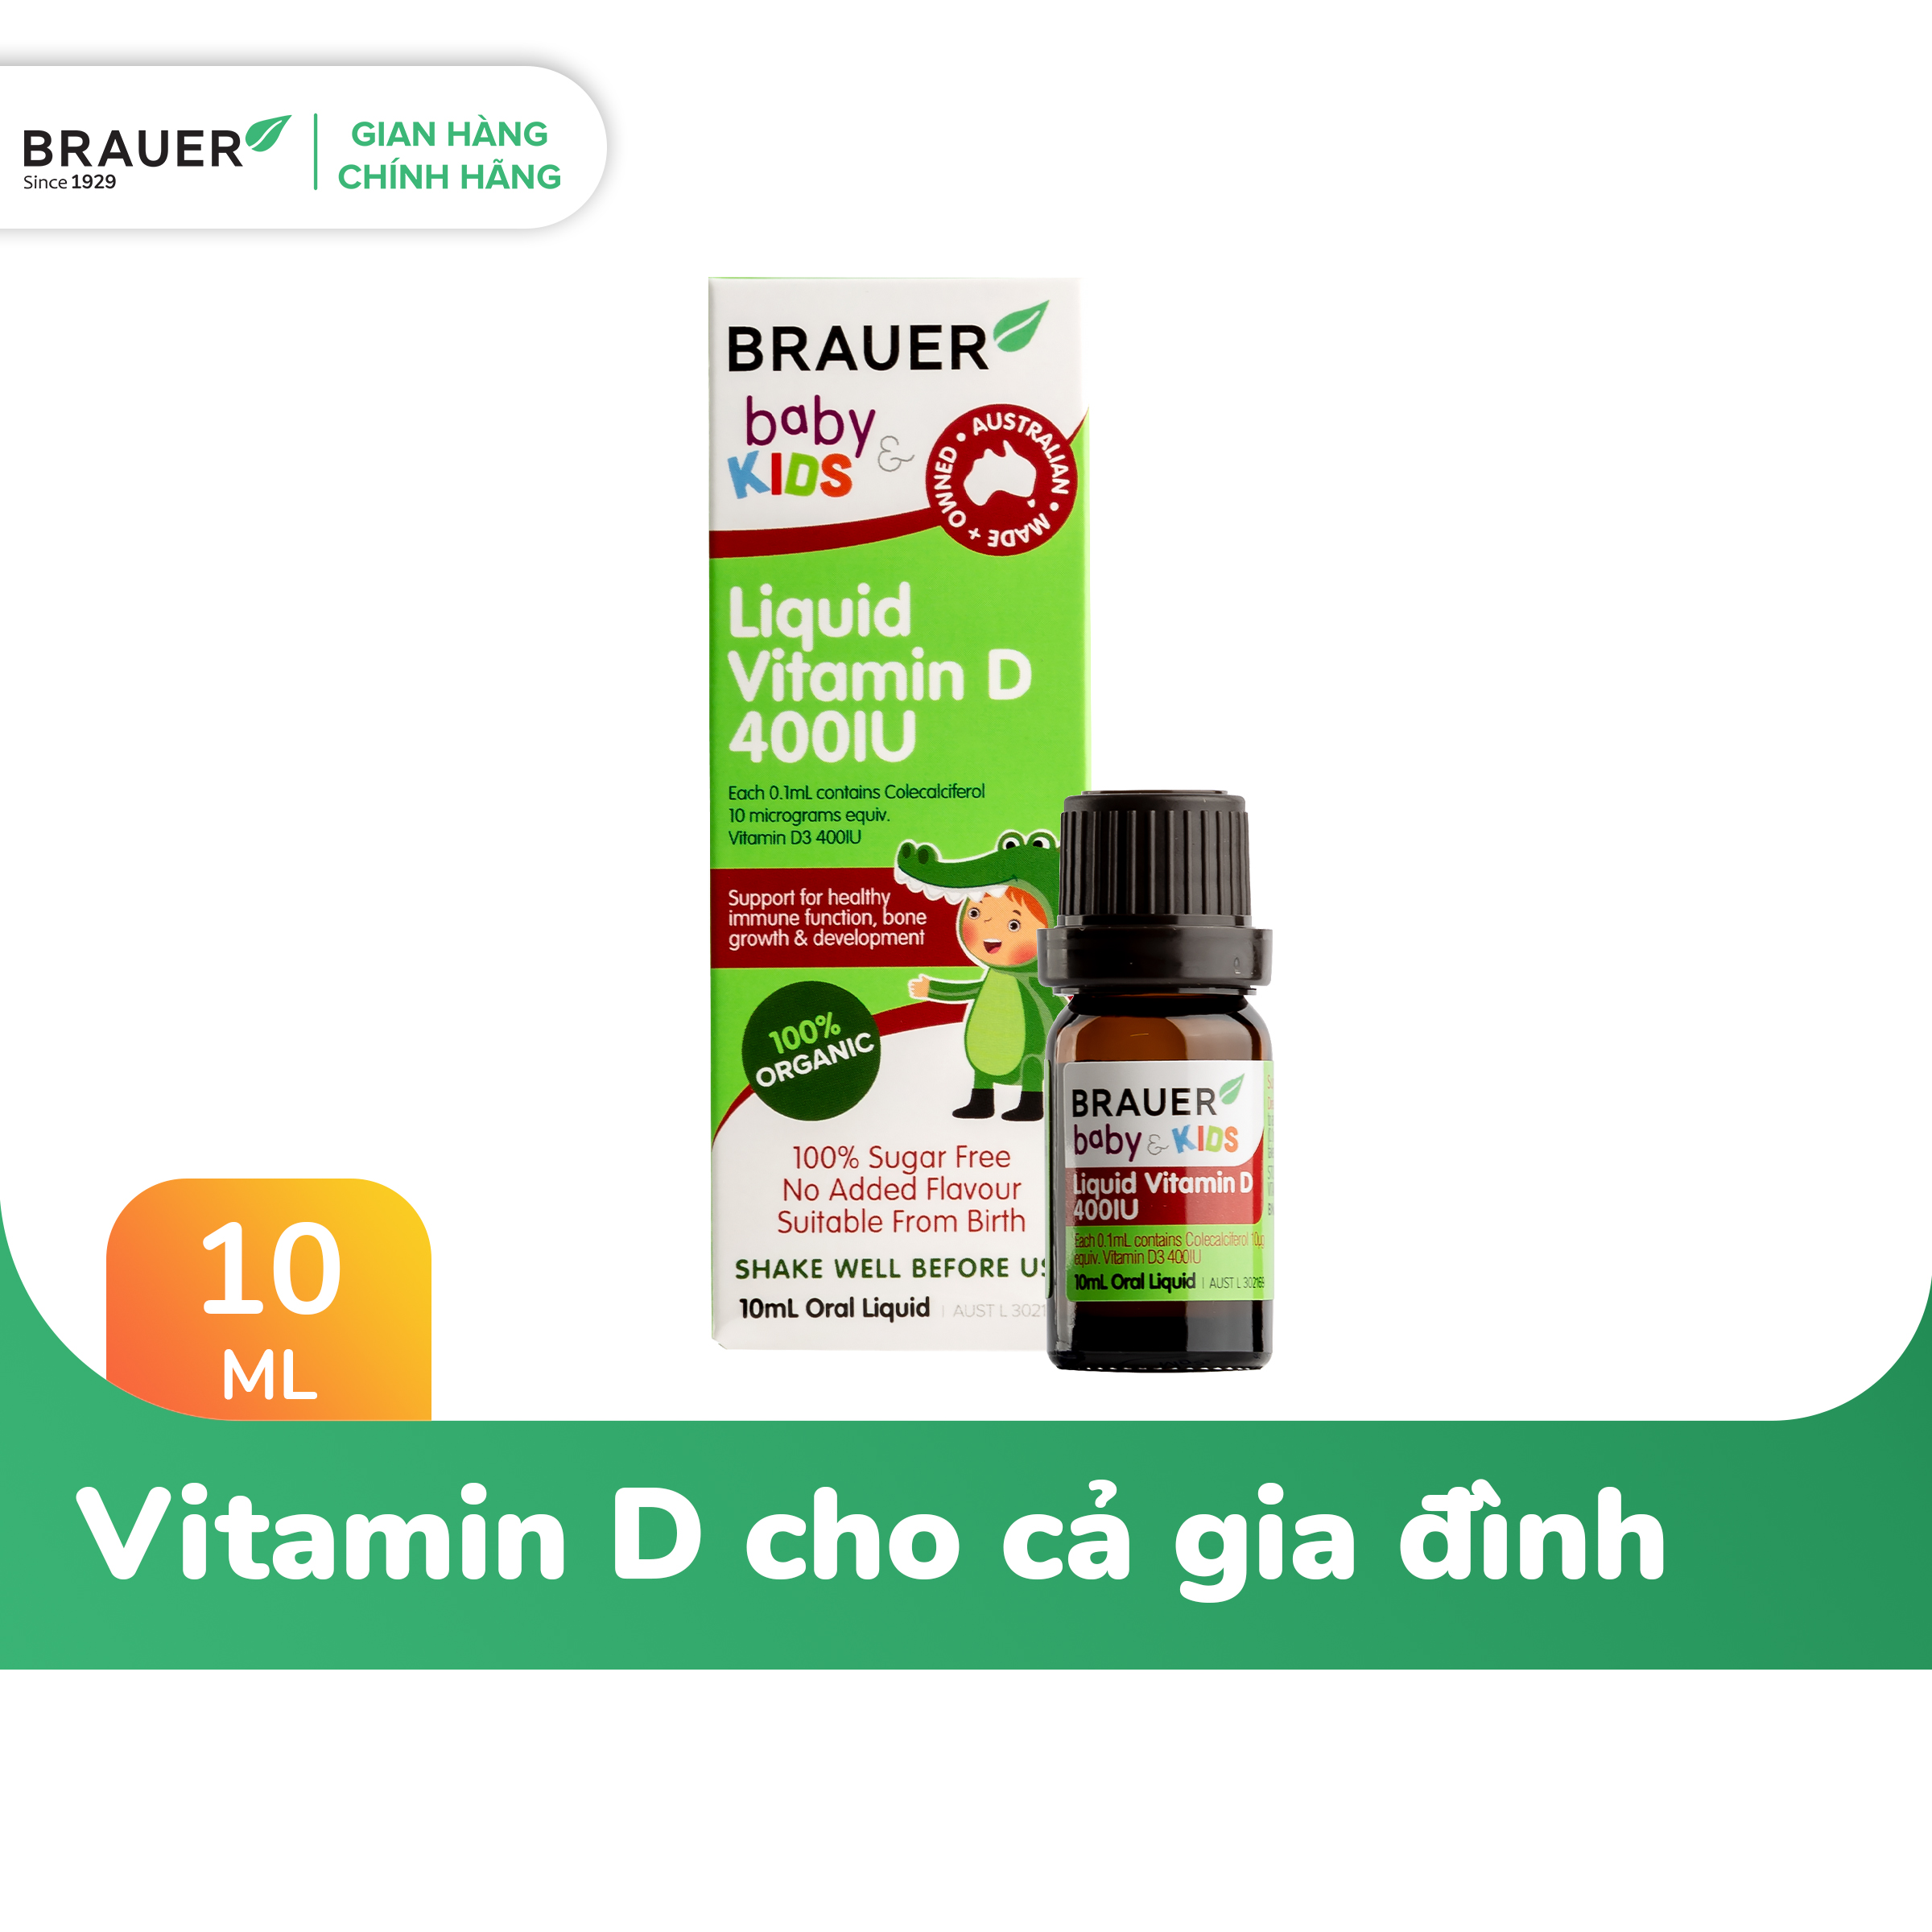 Vitamin D Brauer Úc dành cho trẻ sơ sinh trở lên (10ml)